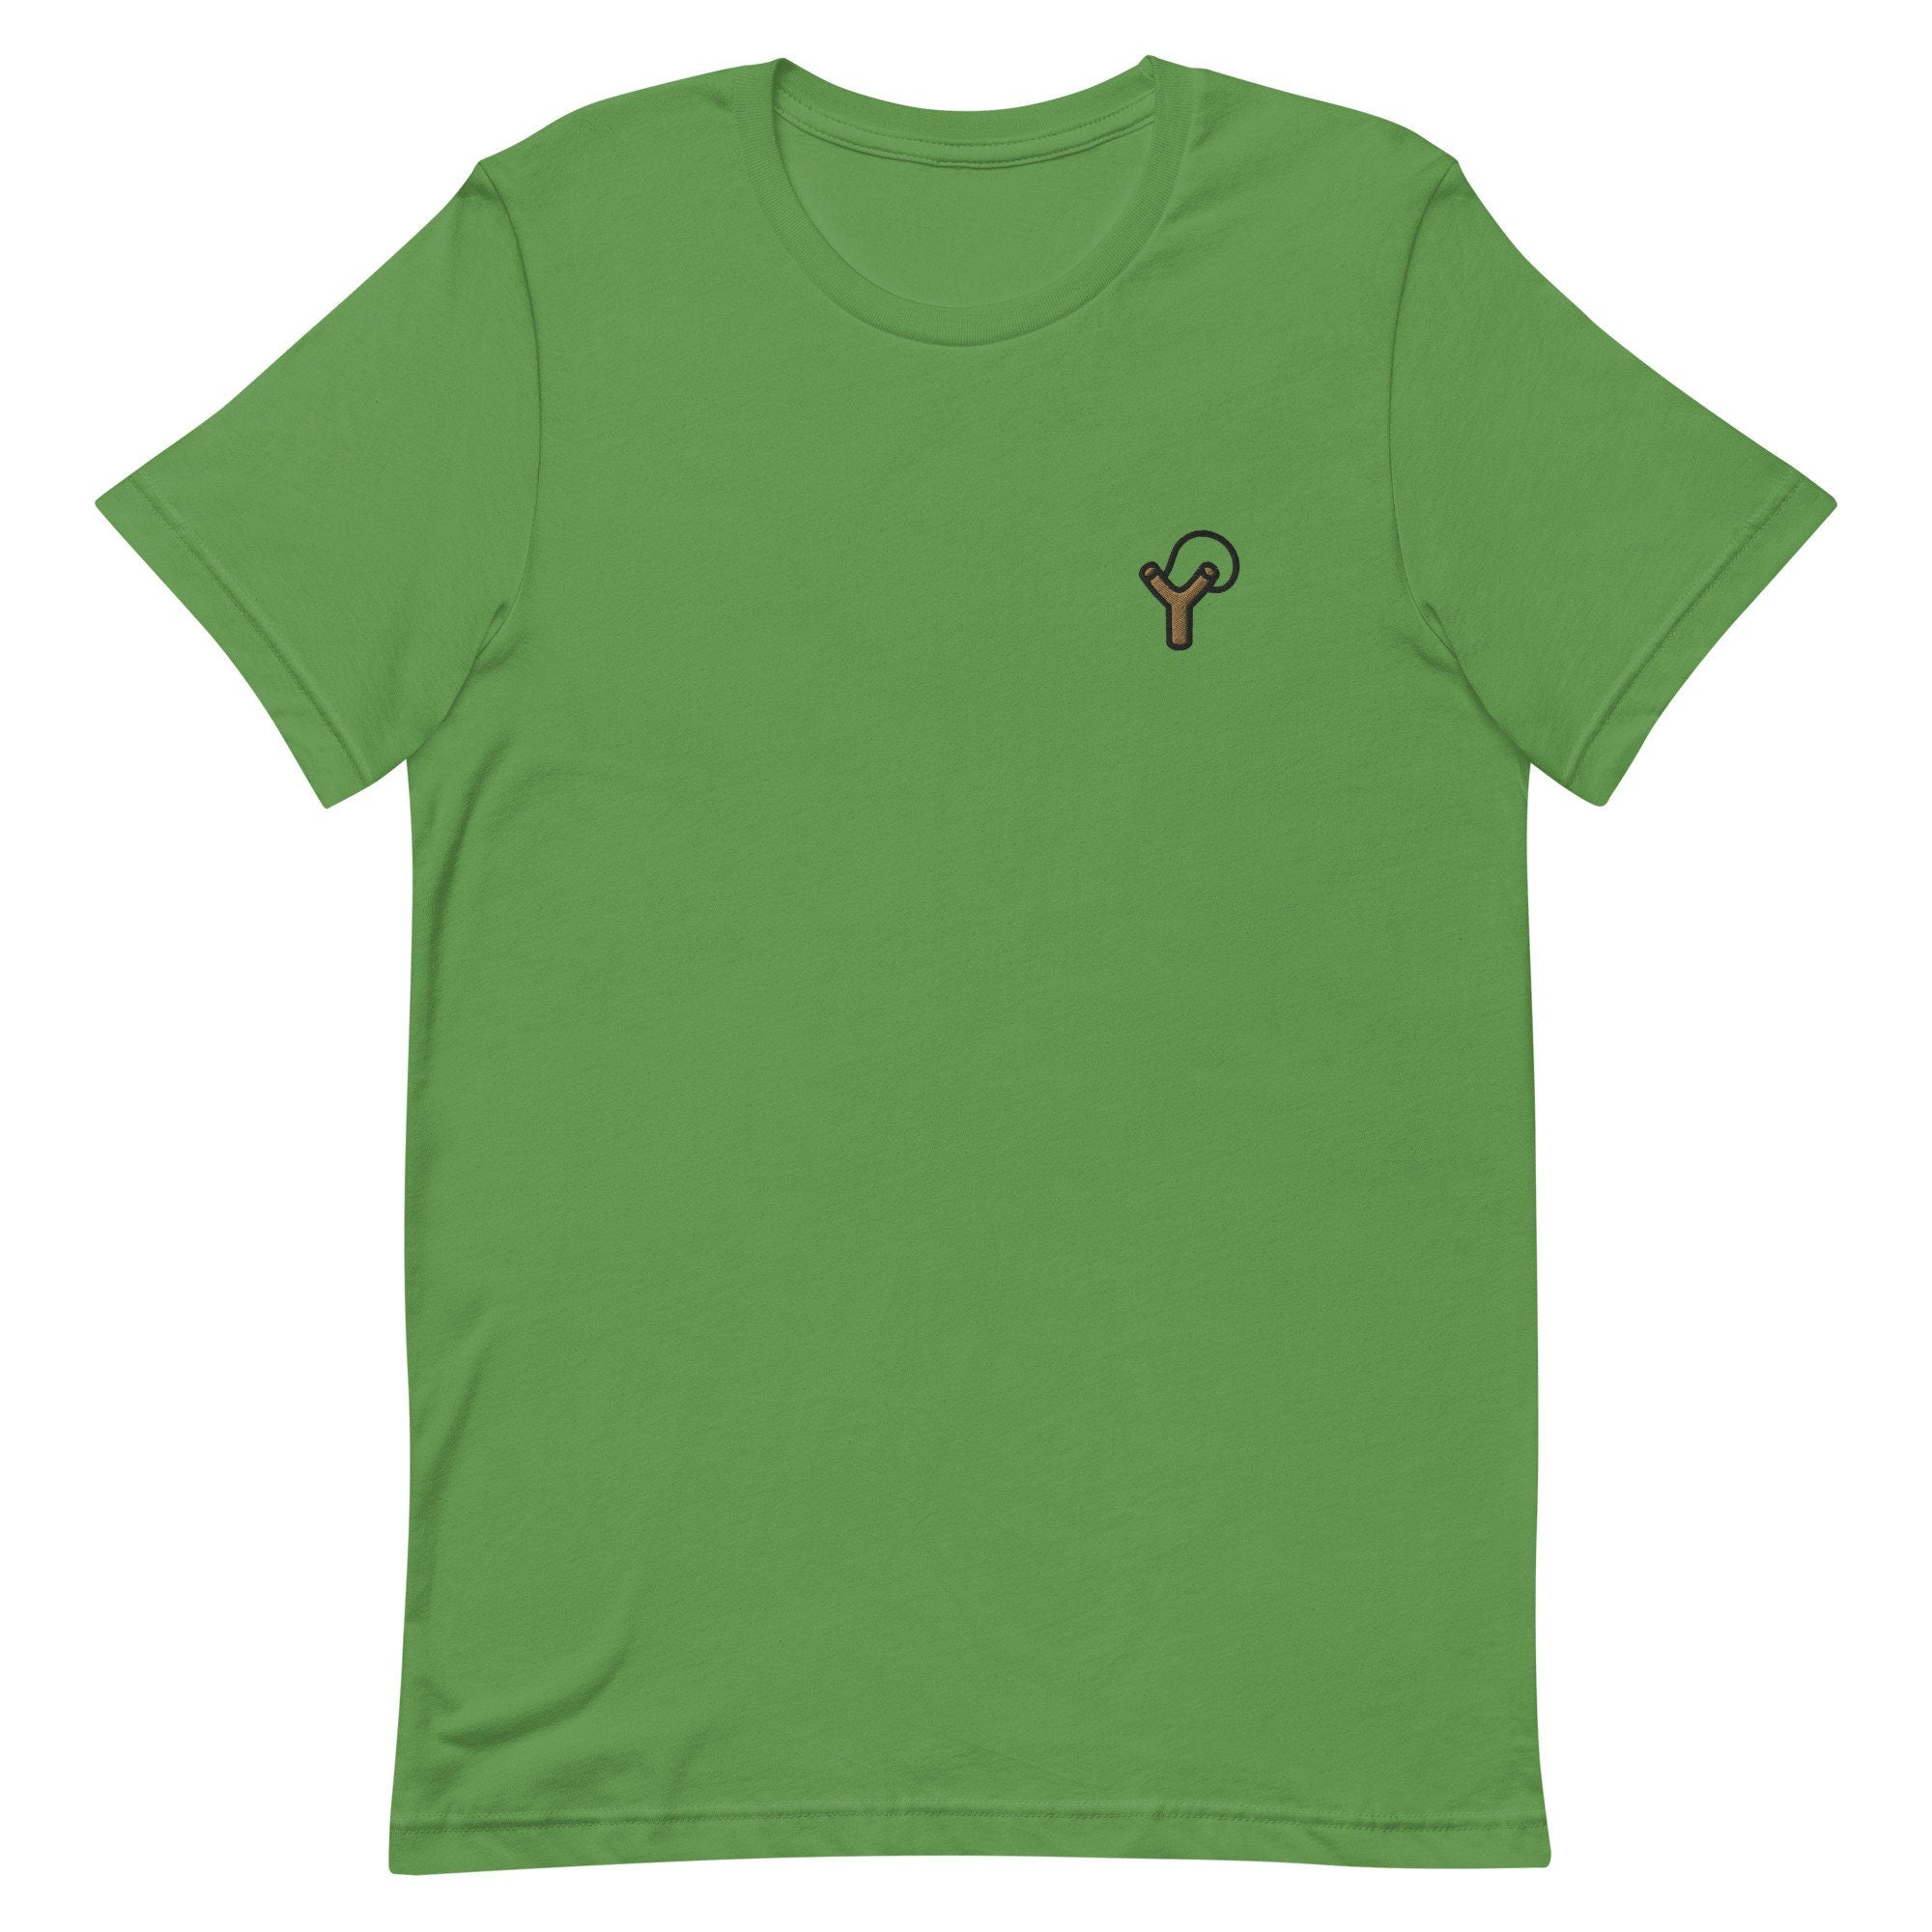 Sling Shot Premium Men's T-Shirt, Embroidered Men's T-Shirt Gift for Boyfriend, Men's Short Sleeve Shirt - Multiple Colors